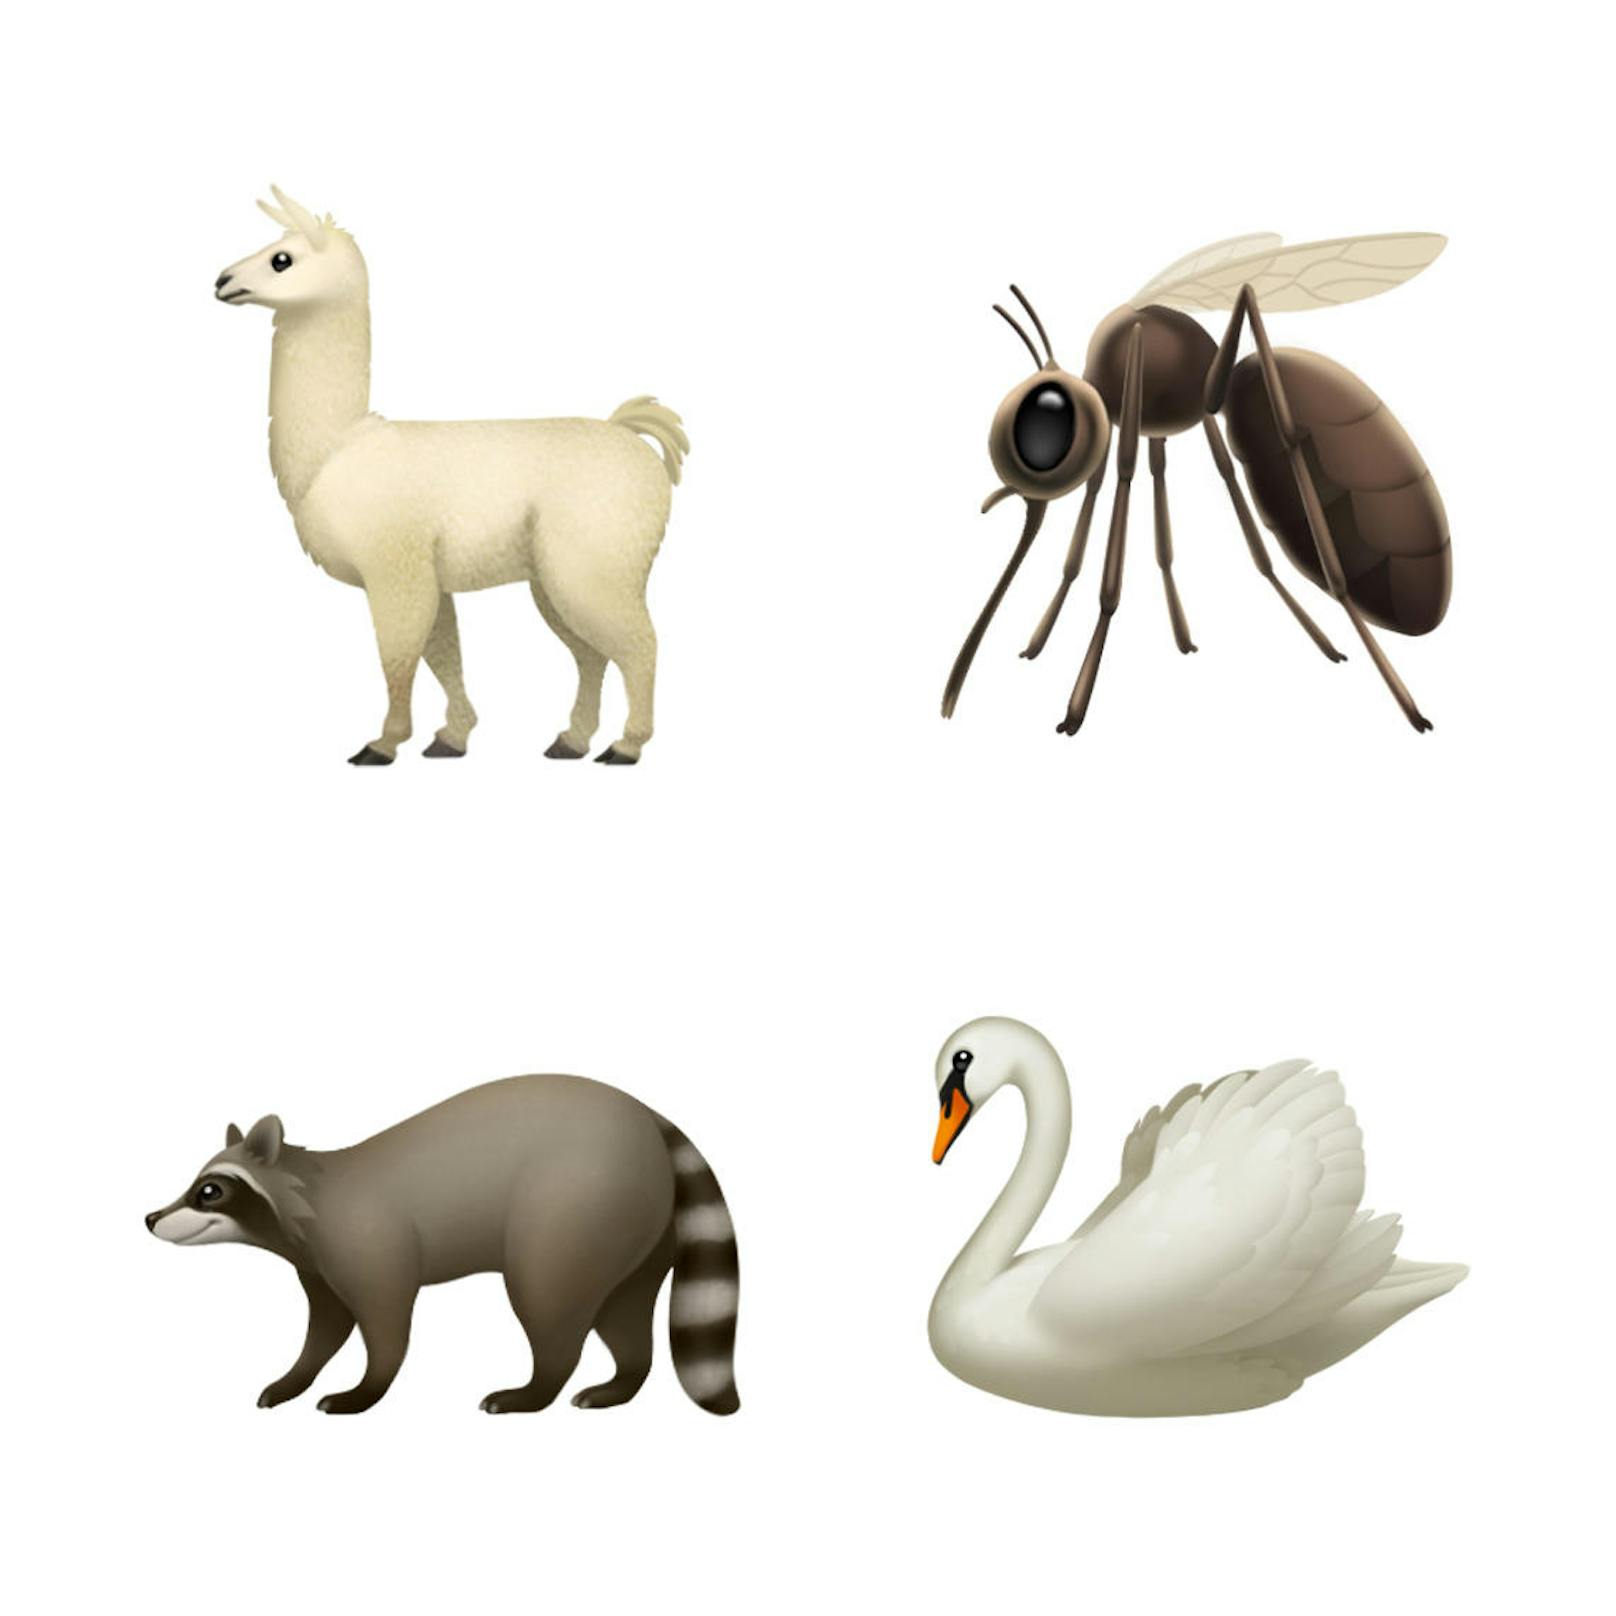 Das sind die neuen Emojis, die Apple mit dem iOS-Update 12.1 einführt. 